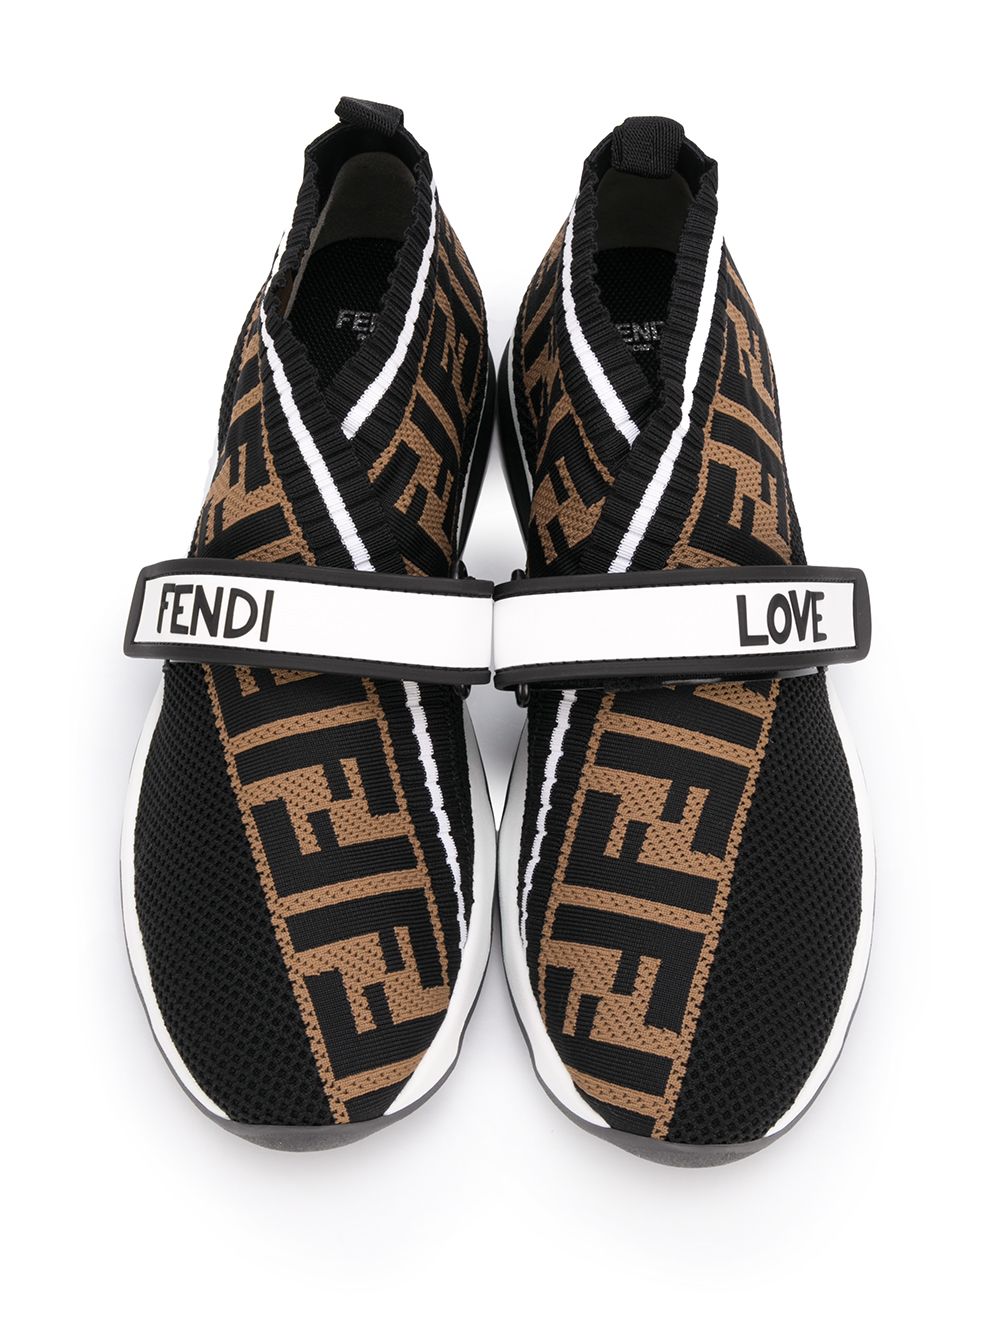 фото Fendi кроссовки rockoko с логотипом ff